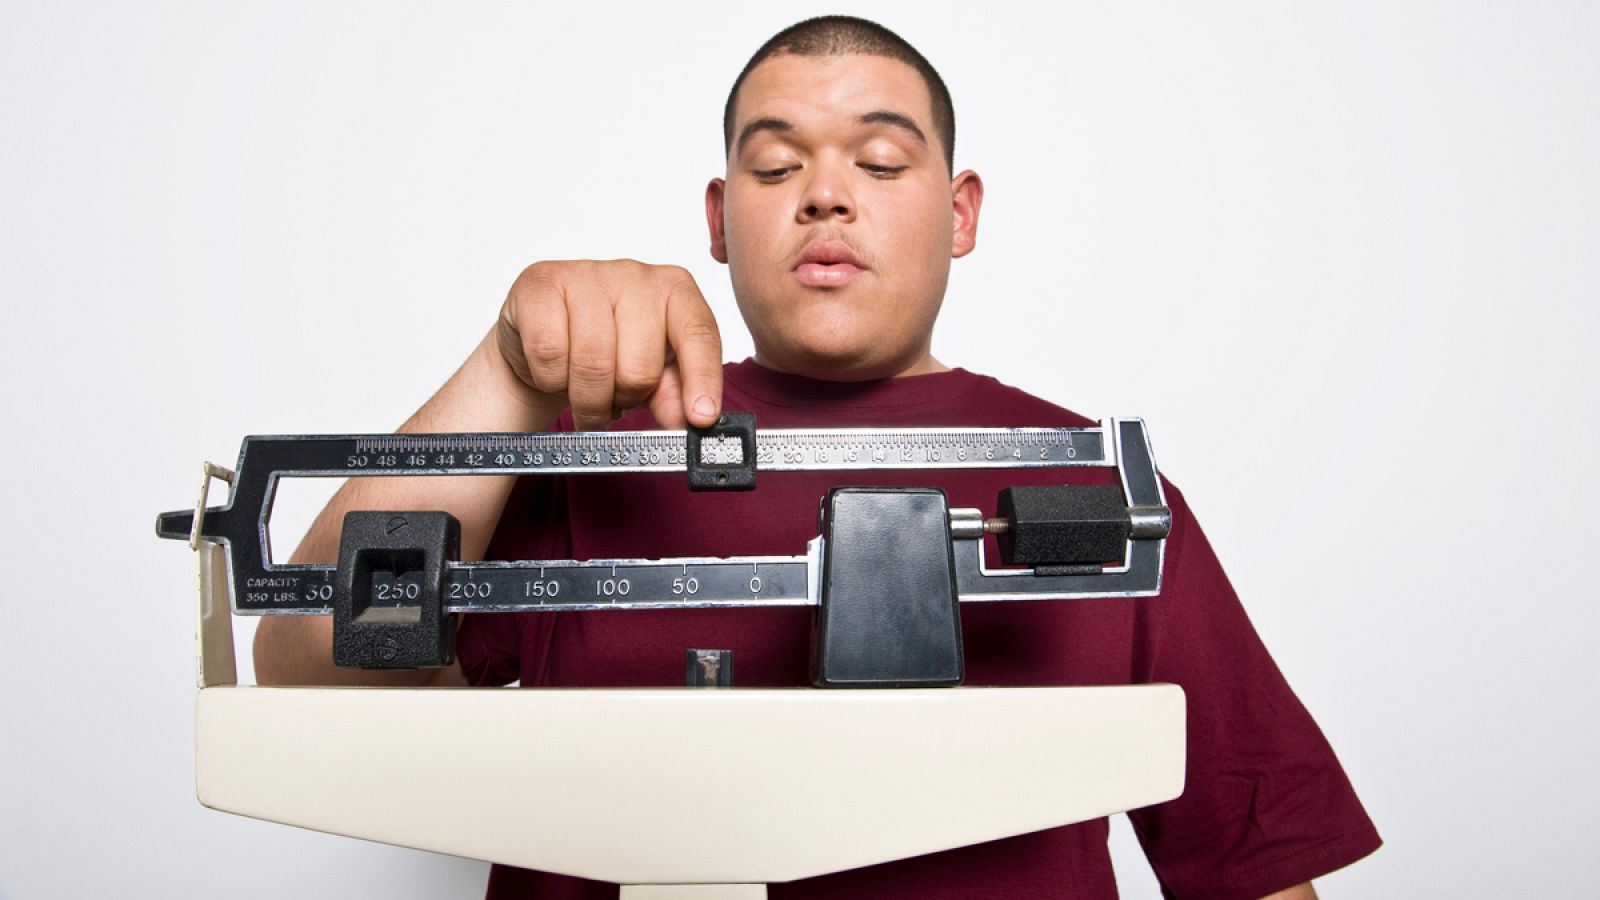 Obesidad - Un hombre joven pesándose en una báscula